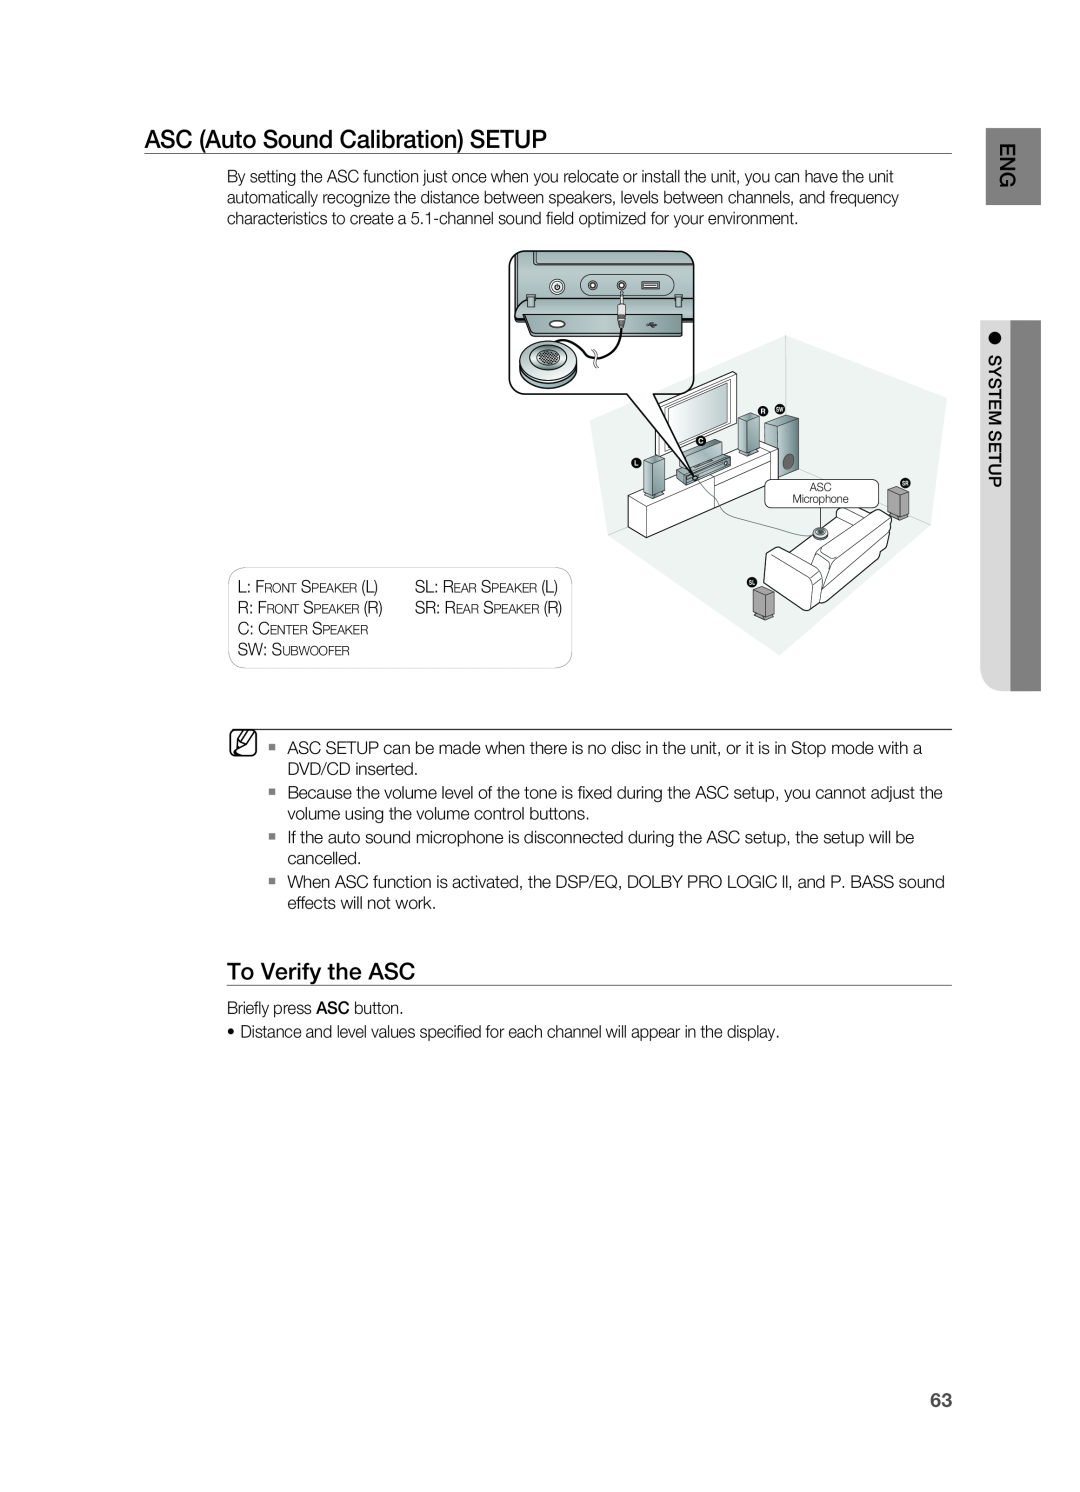 Samsung HT-TZ515 user manual ASC Auto Sound Calibration SETUP, To Verify the ASC 